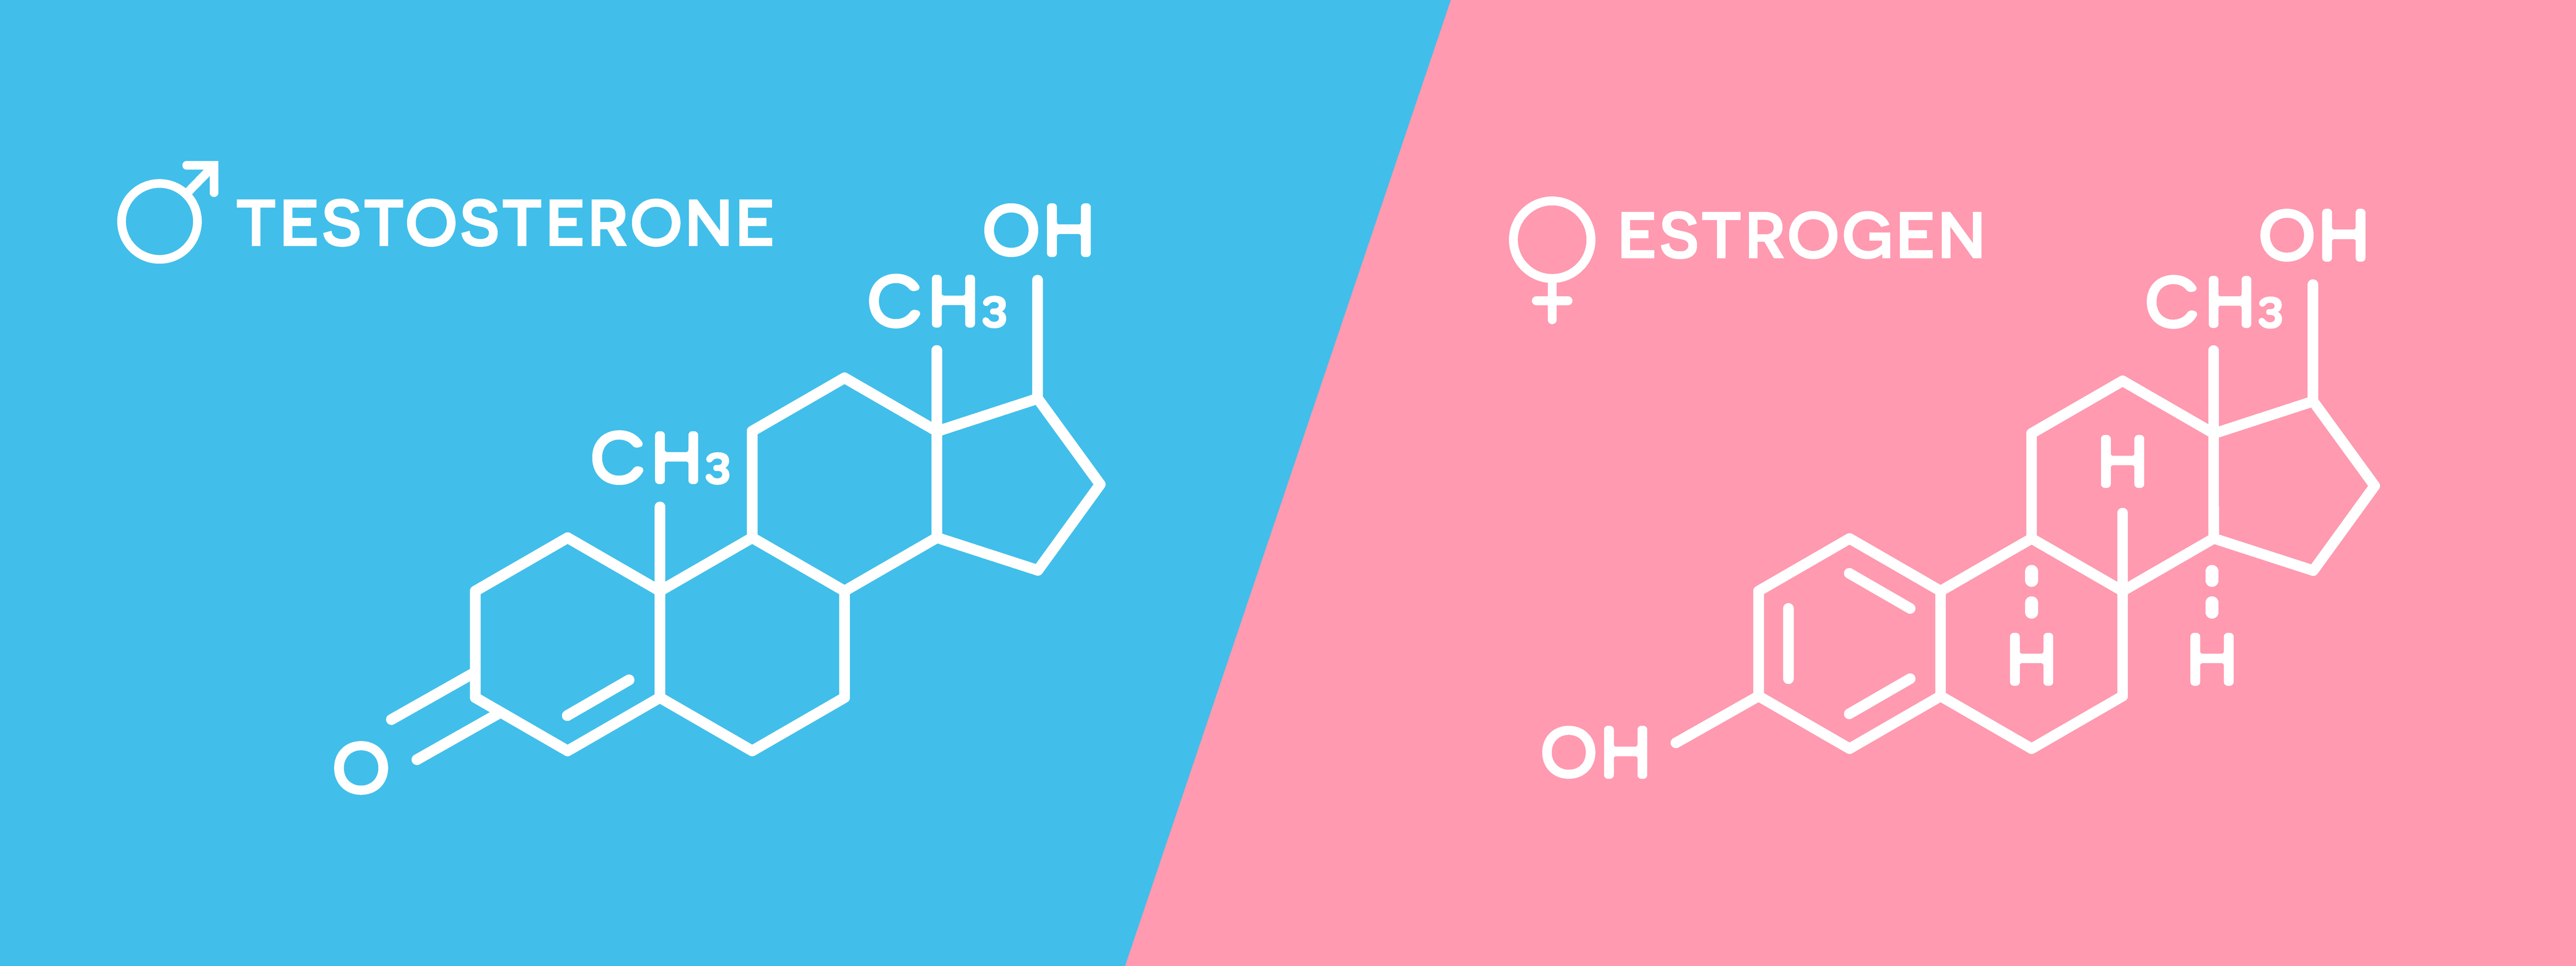 improve estrogen detox naturally